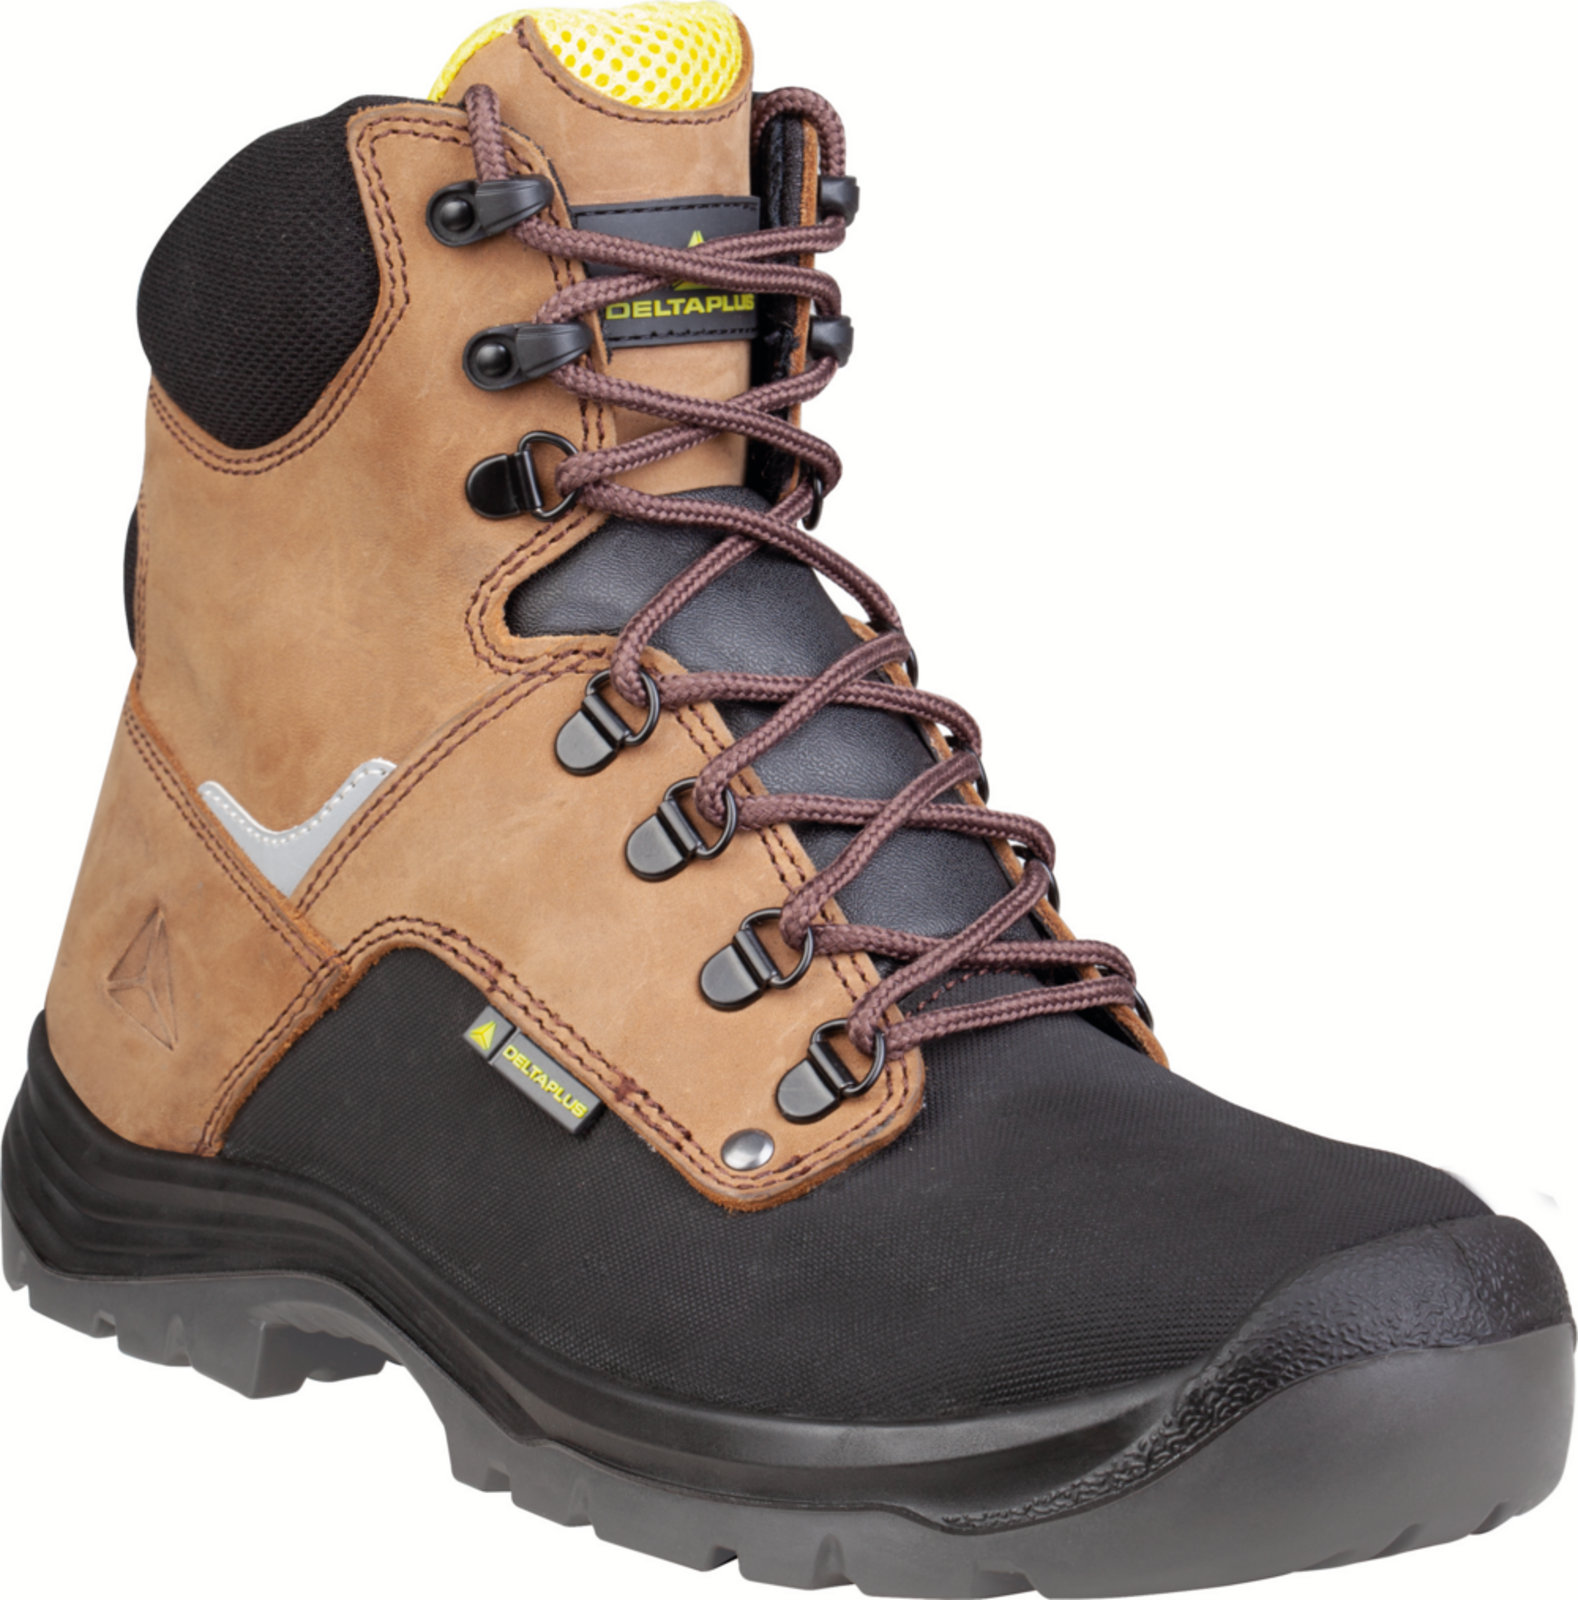 Vysoká bezpečnostná obuv Delta Plus Atacama S3 - veľkosť: 39, farba: hnedá/čierna